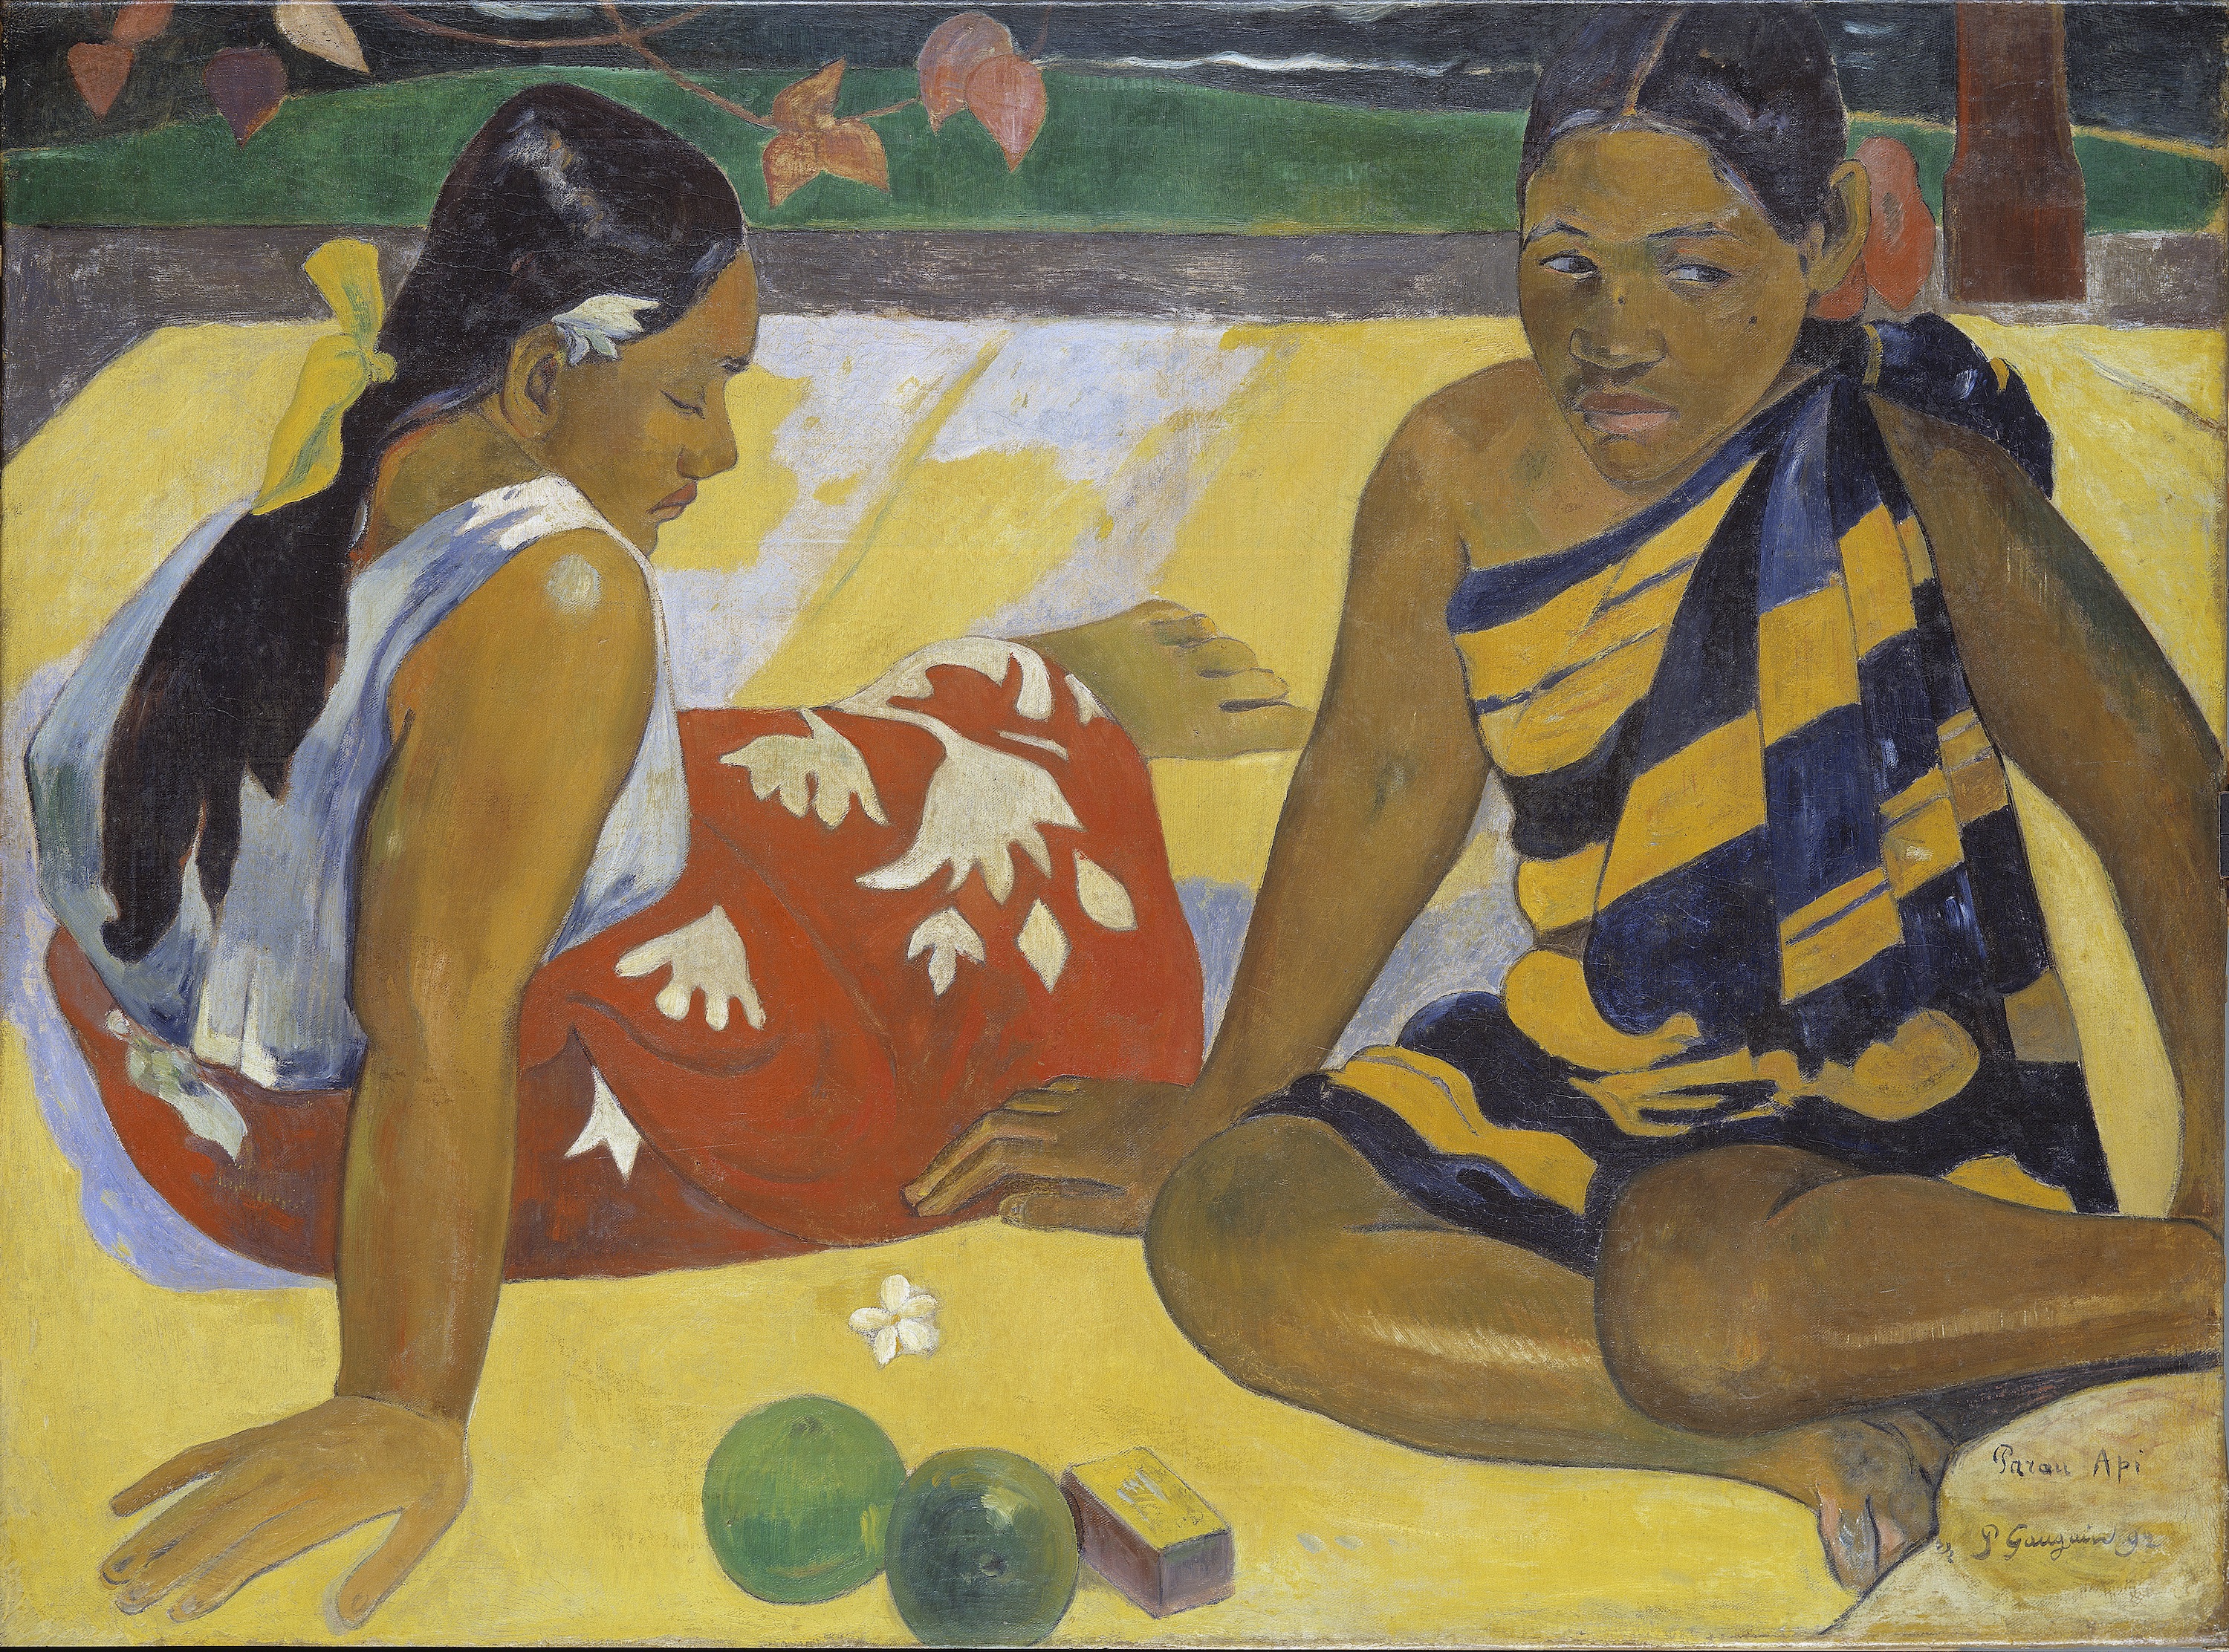 Parau Api. What News by Paul Gauguin - 1892 - 92 x 67 cm Staatliche Kunstsammlungen Dresden